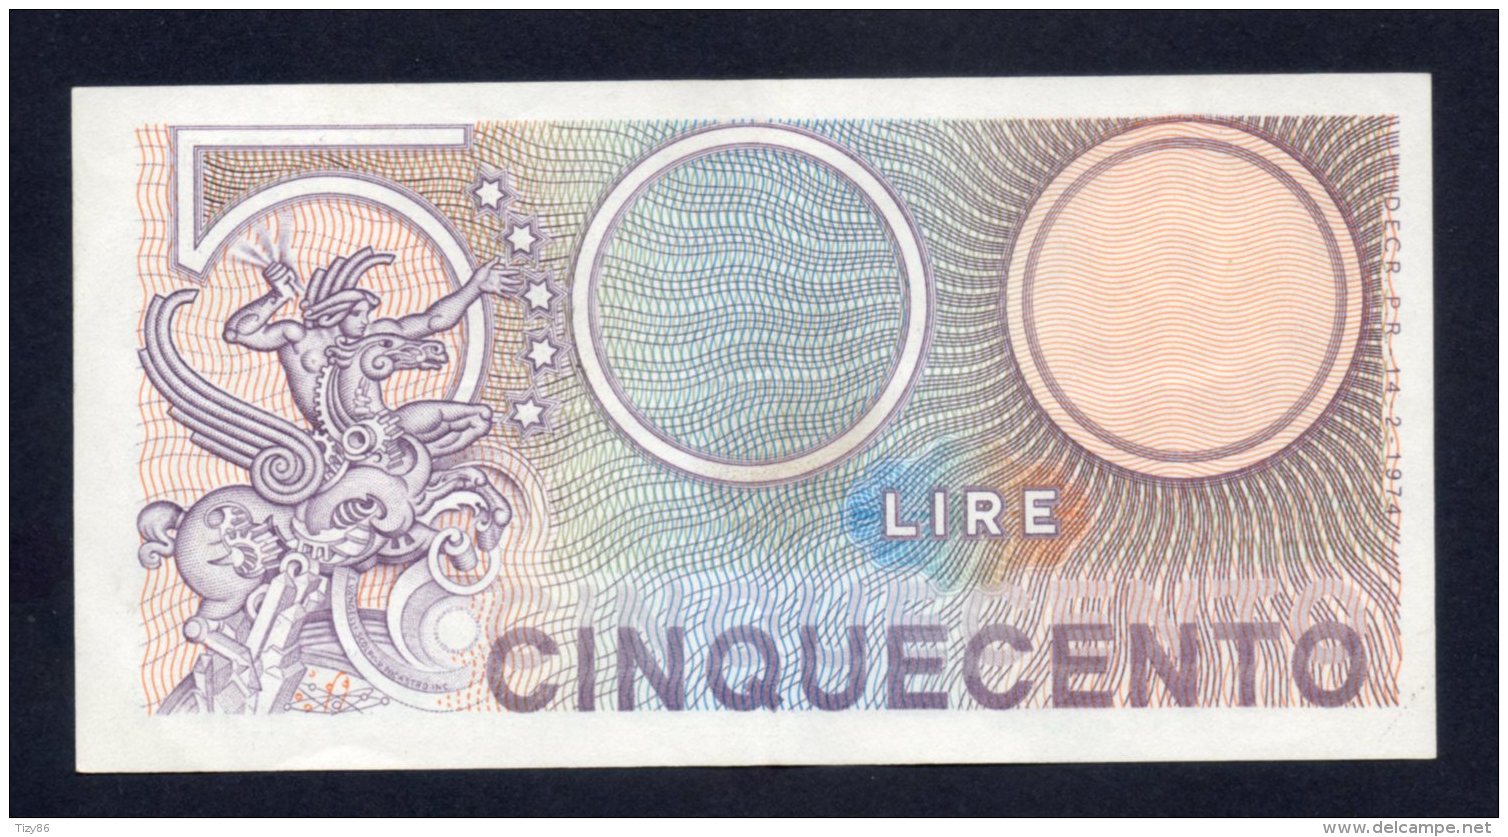 Repubblica Italiana - Lire 500 14/2/1974 (SPL) - 500 Lire